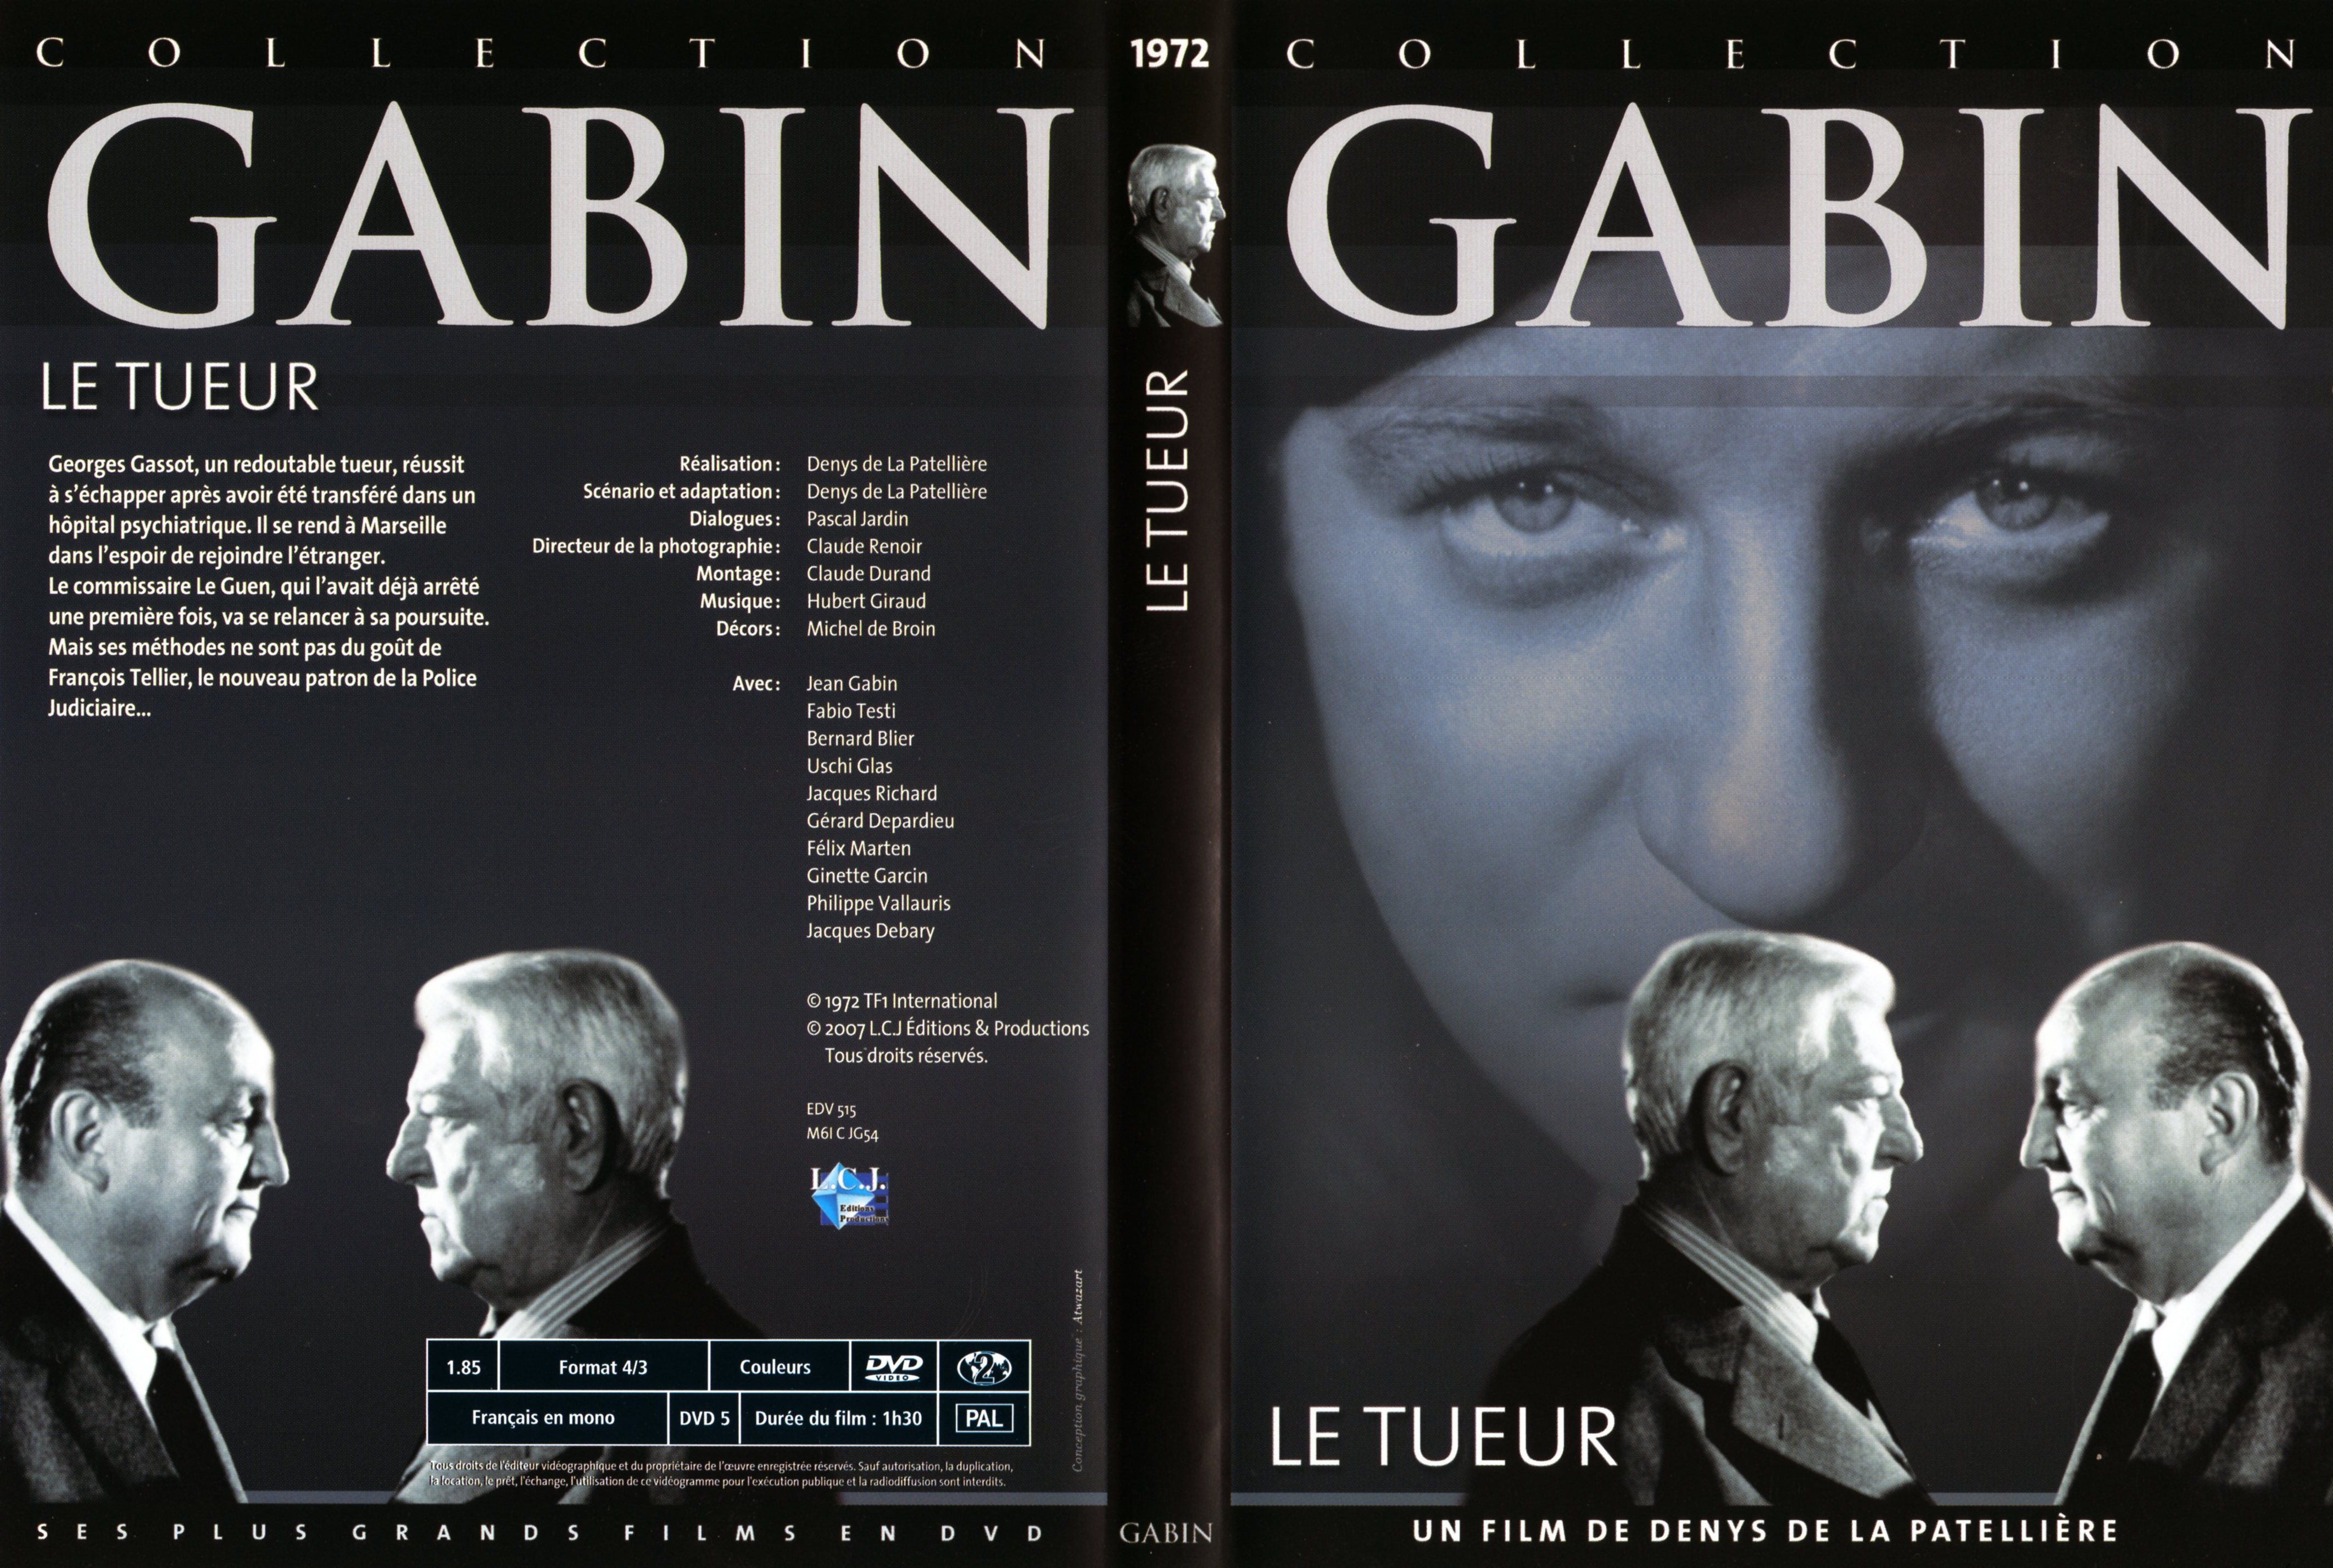 Jaquette DVD Le tueur (Jean Gabin)